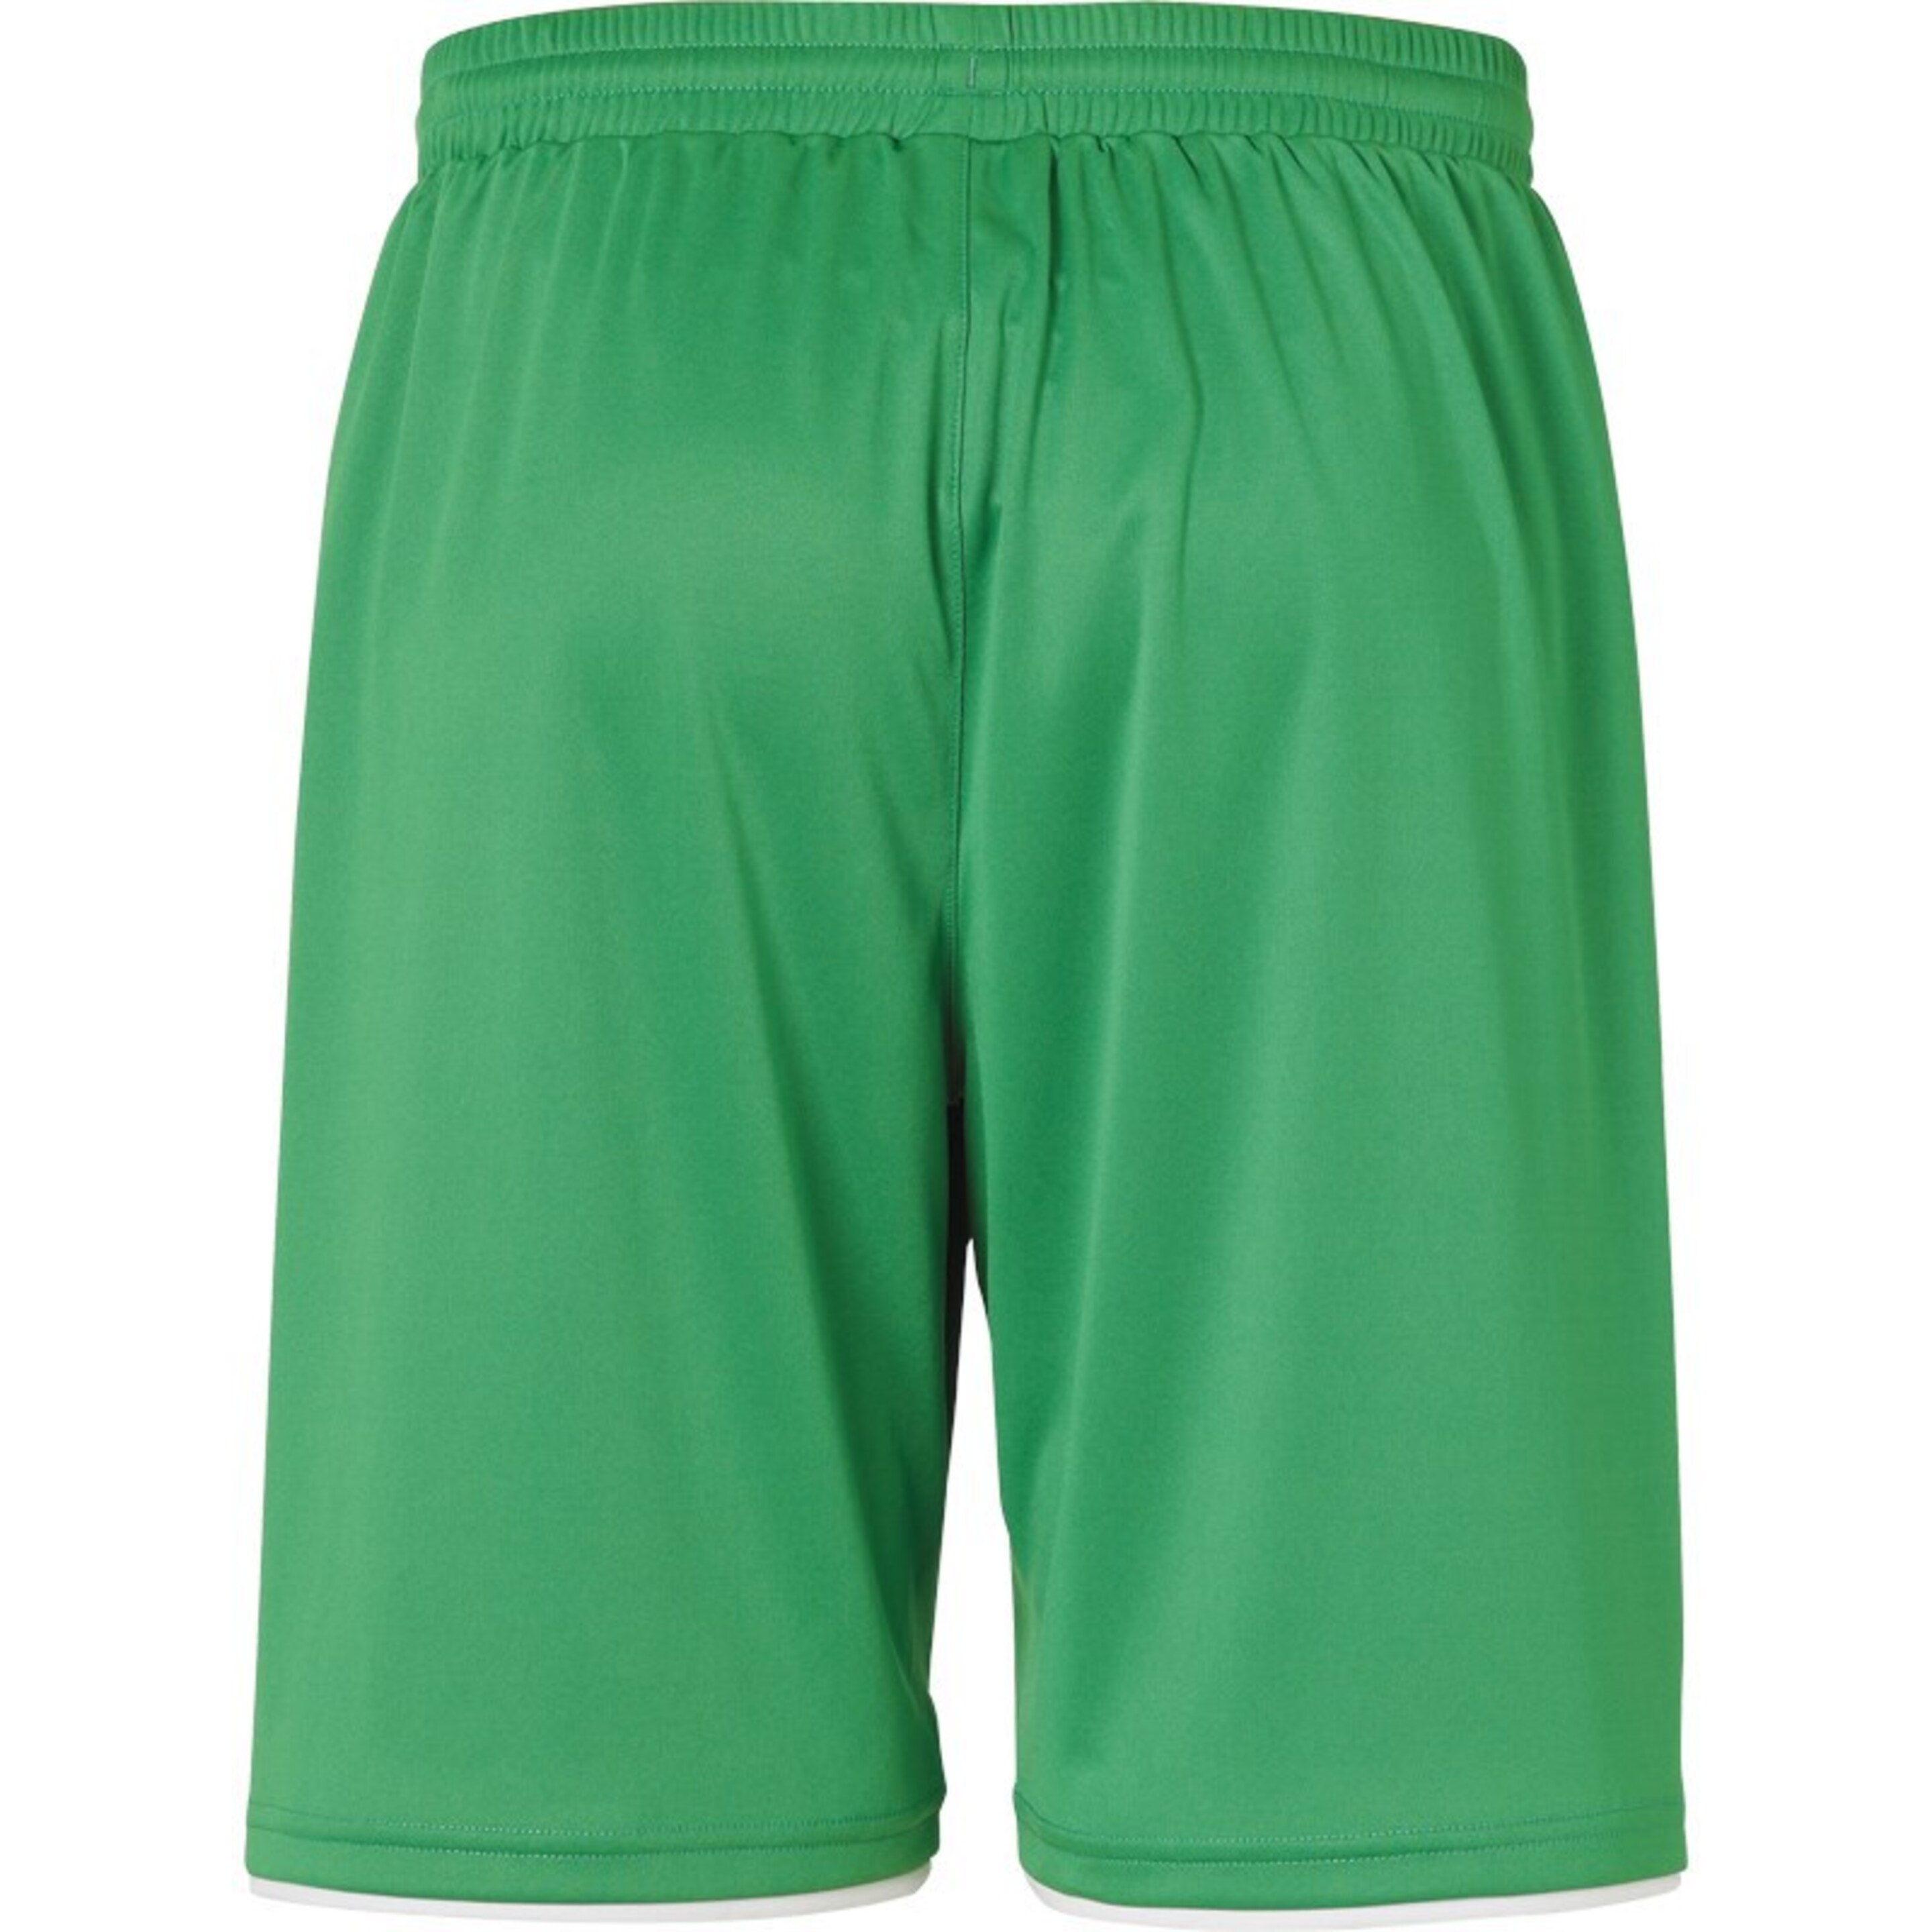 Club Shorts Verde/blanco Uhlsport